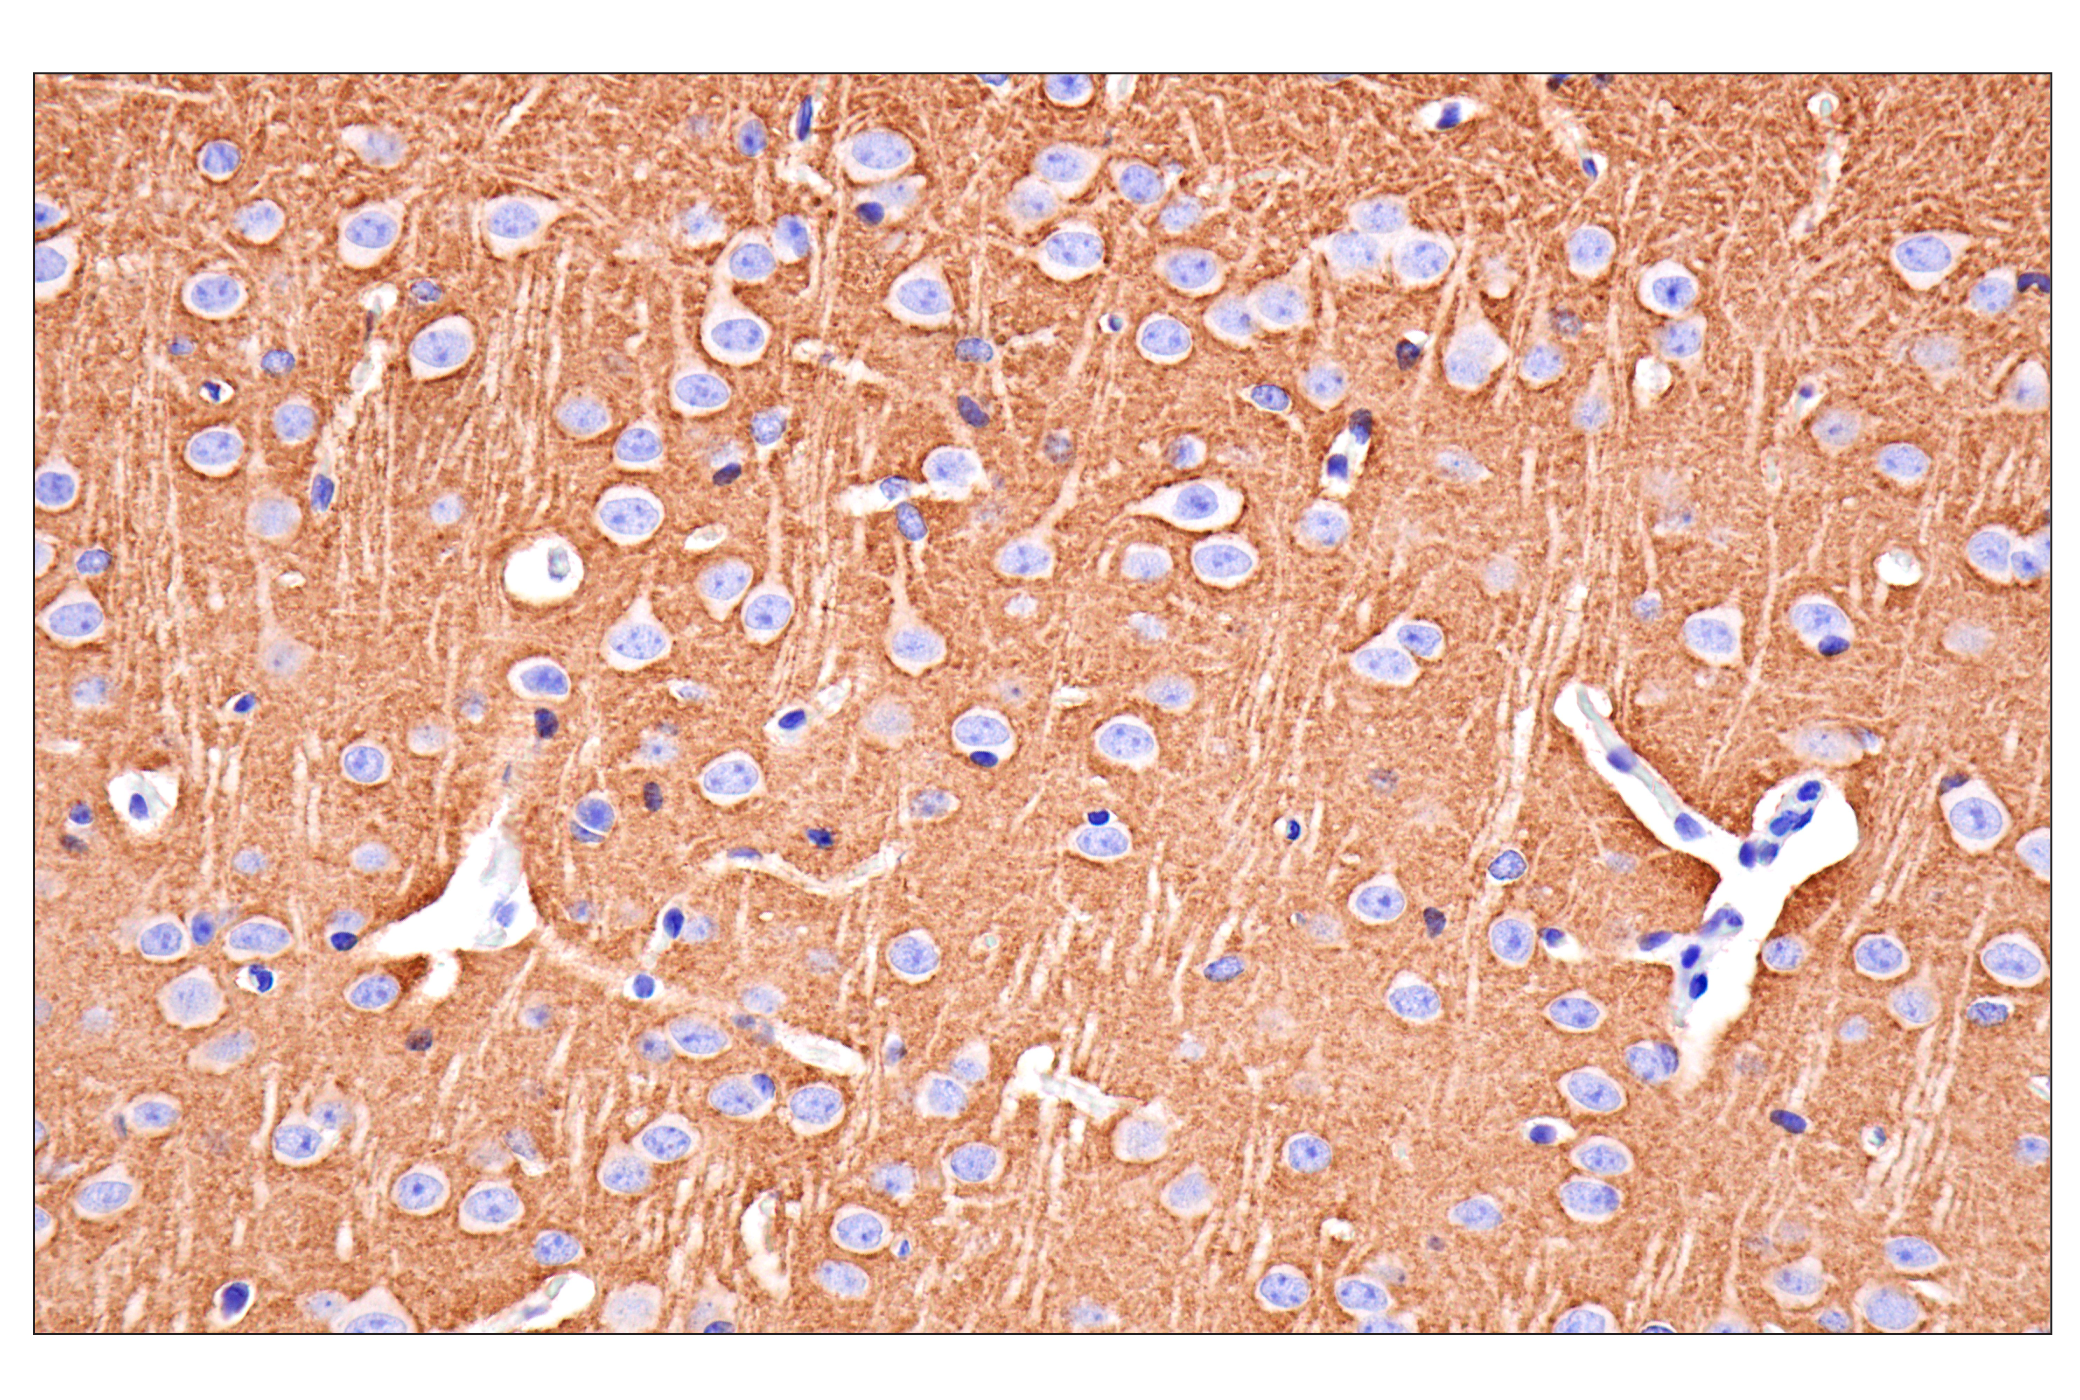  Image 15: Functional Neuron Marker Antibody Sampler Kit